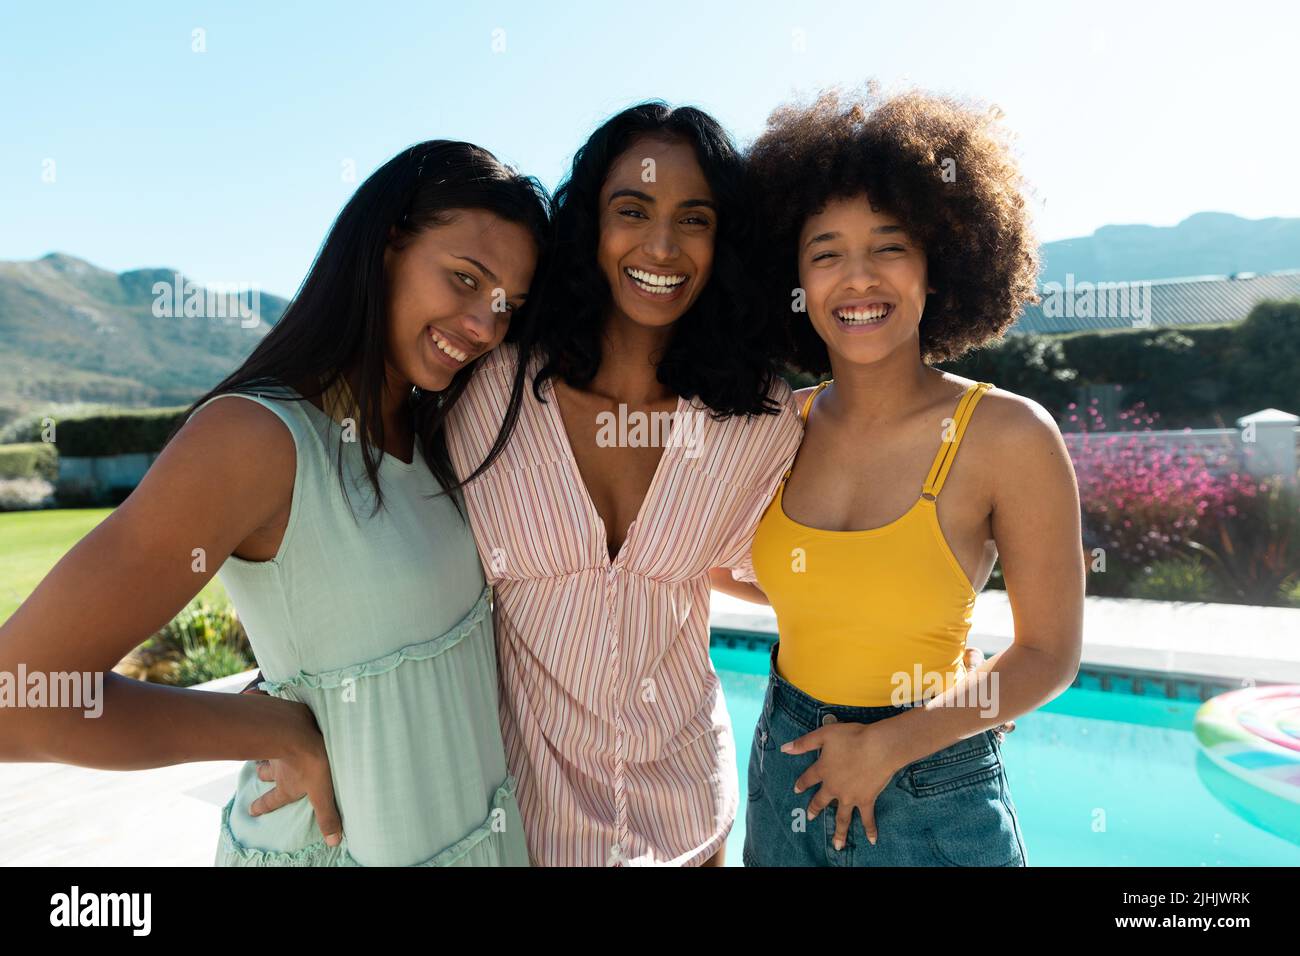 Portrait de jeunes amis biraciaux joyeux appréciant le temps libre ensemble contre le ciel clair en été Banque D'Images